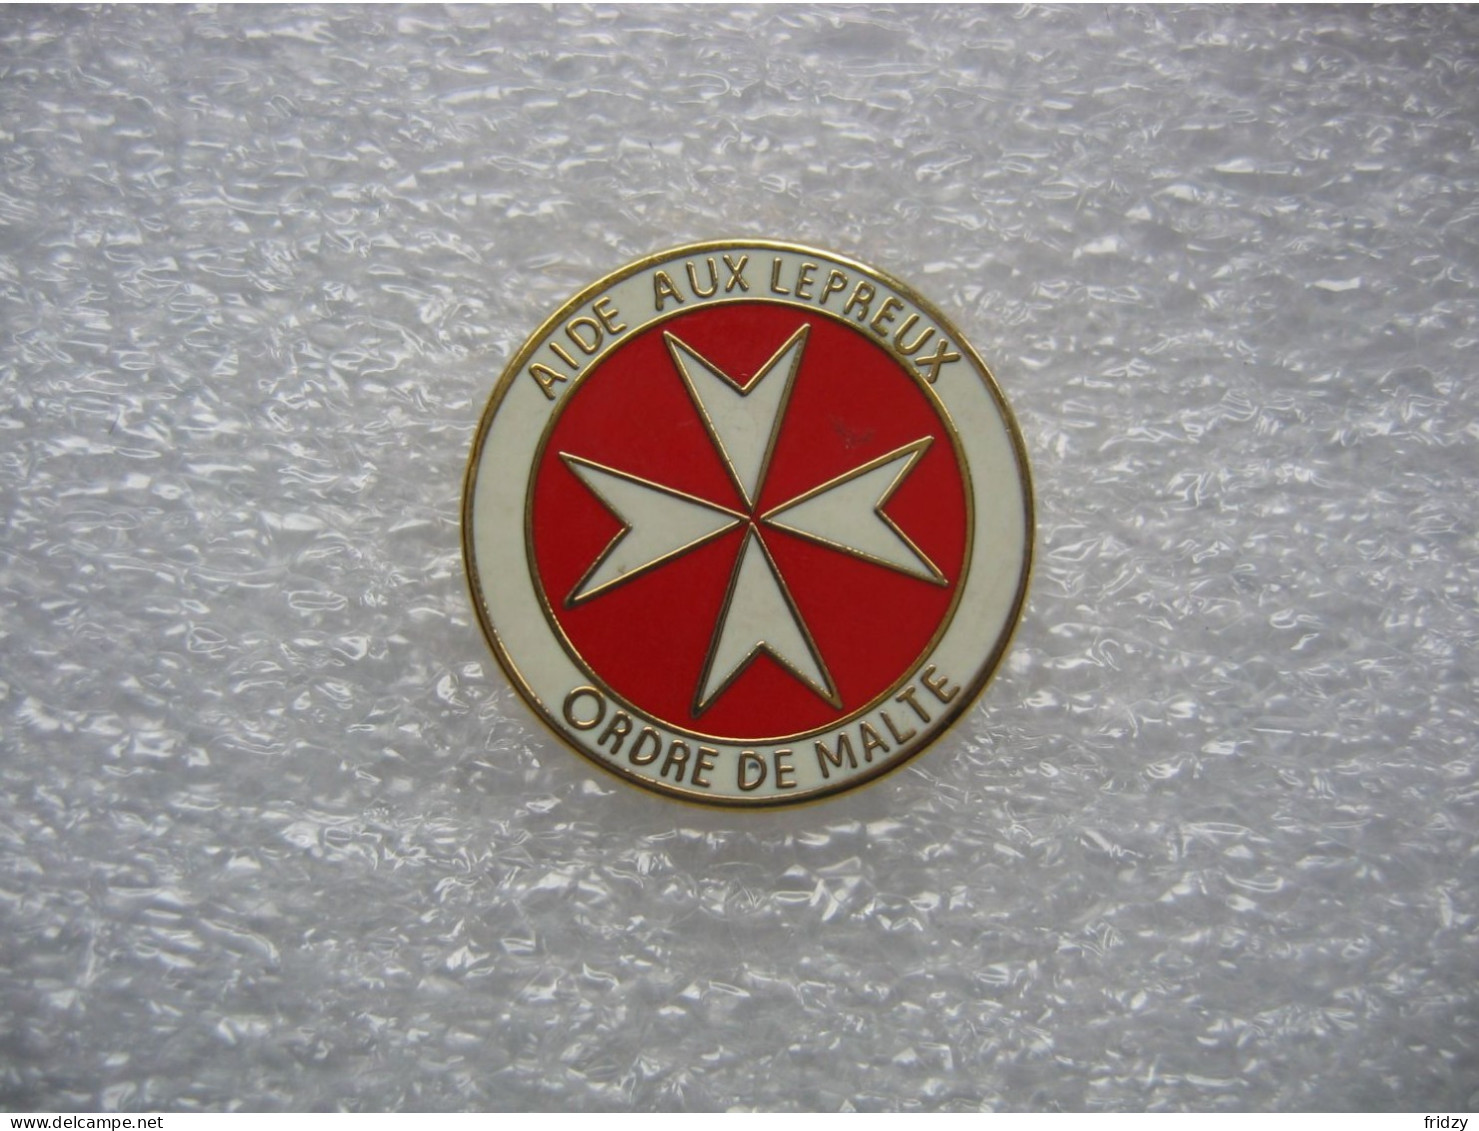 Pin's Emblème De Malte. Aide Aux Lépreux, Ordre De Malte - Médical